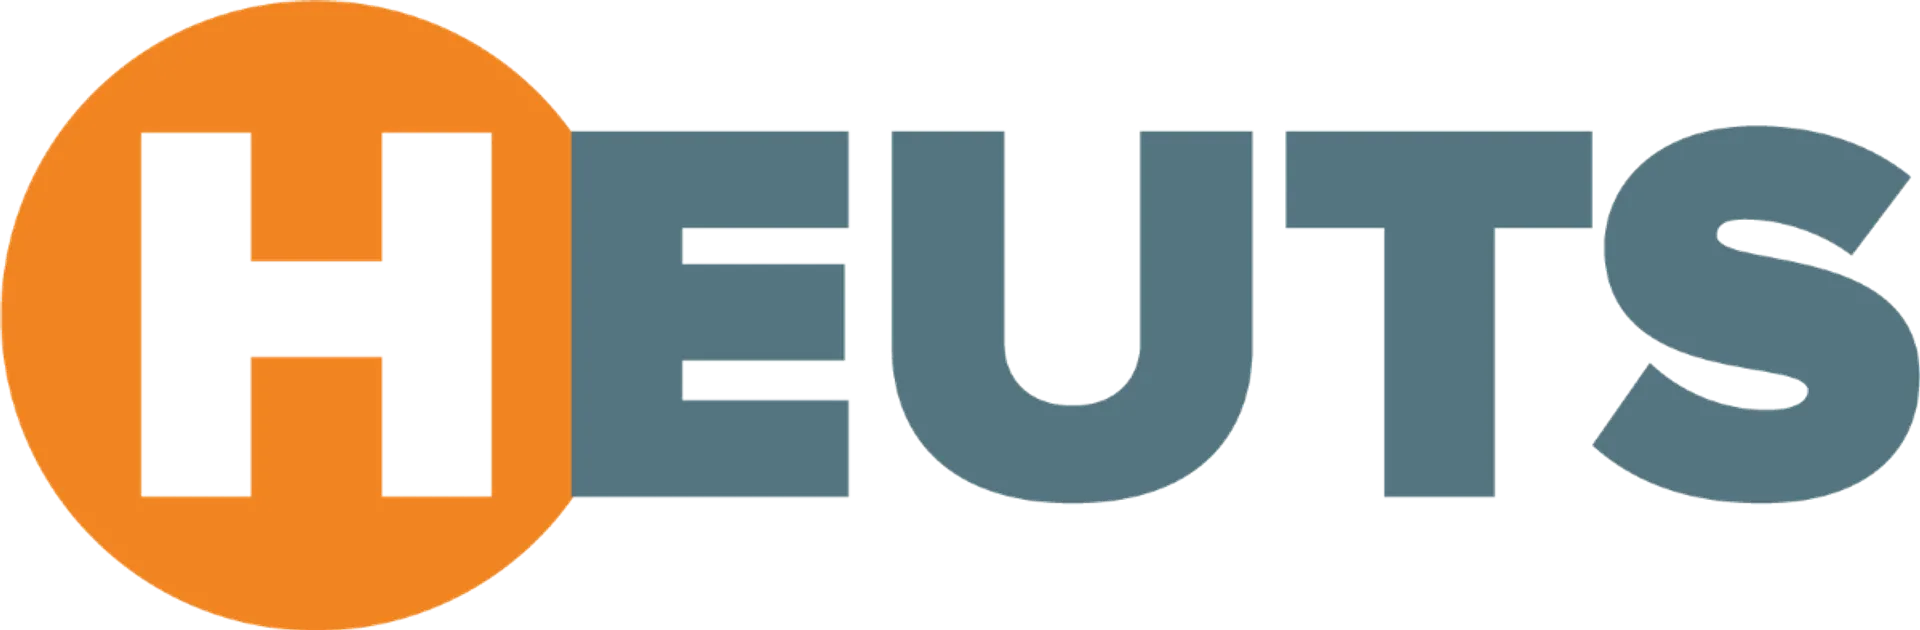 HEUTS logo